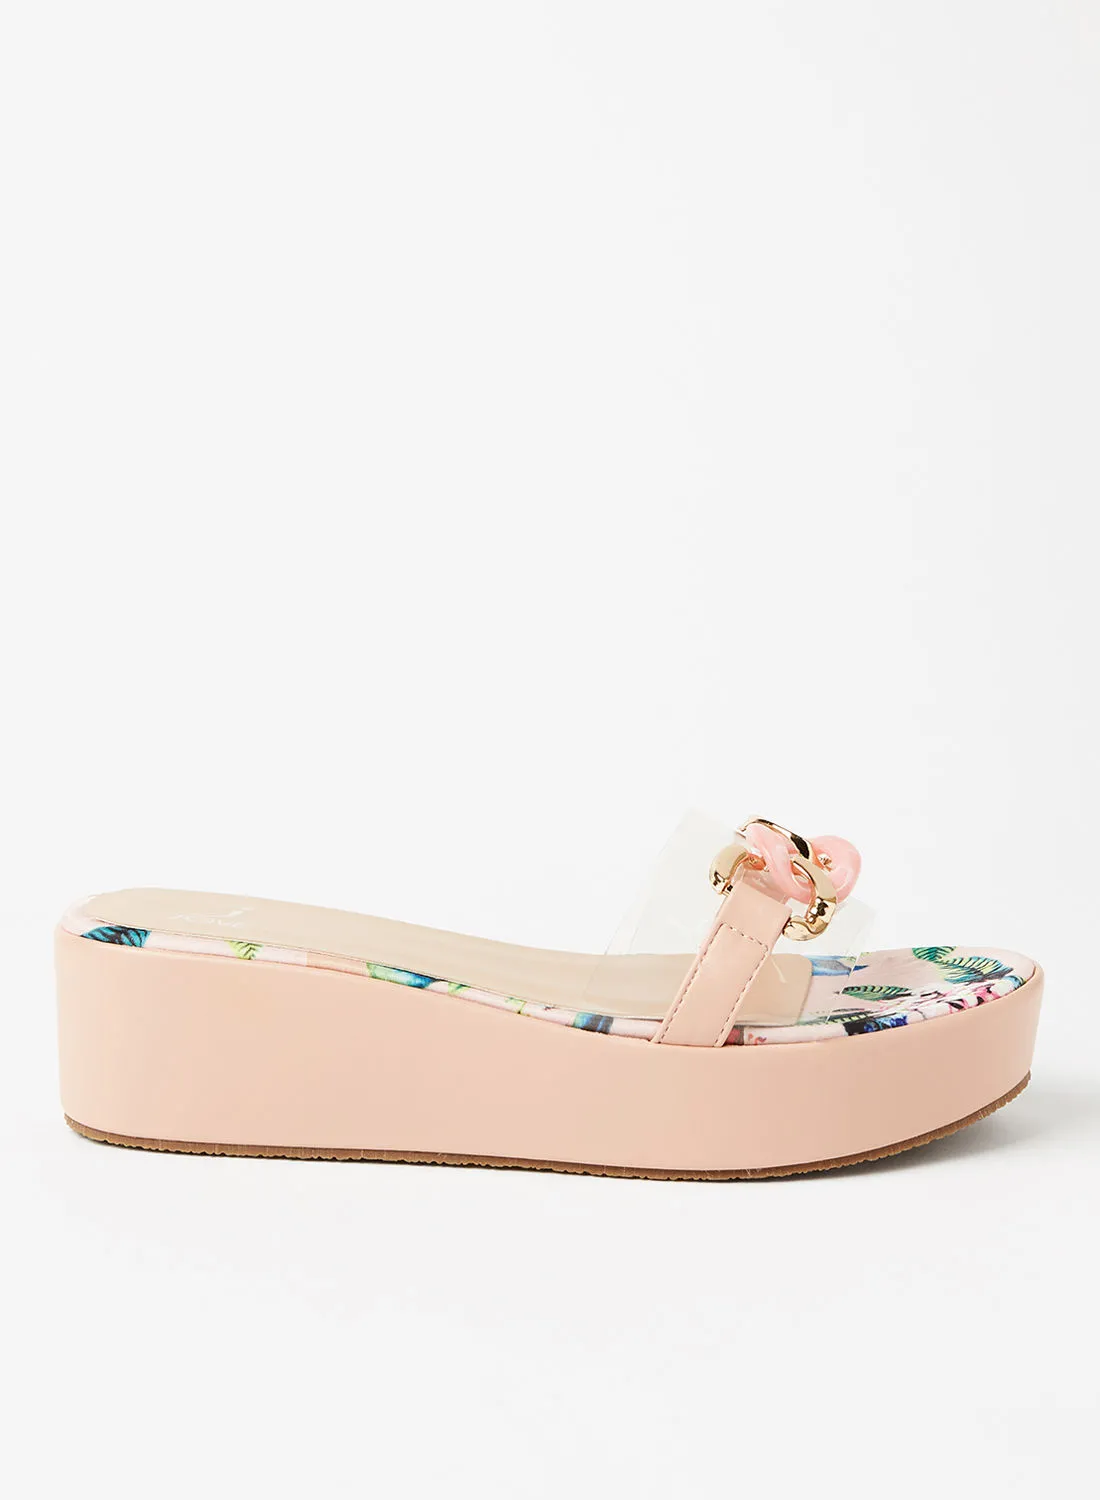 Jove Casual Slip-On Platform Sandals Pink/Gold